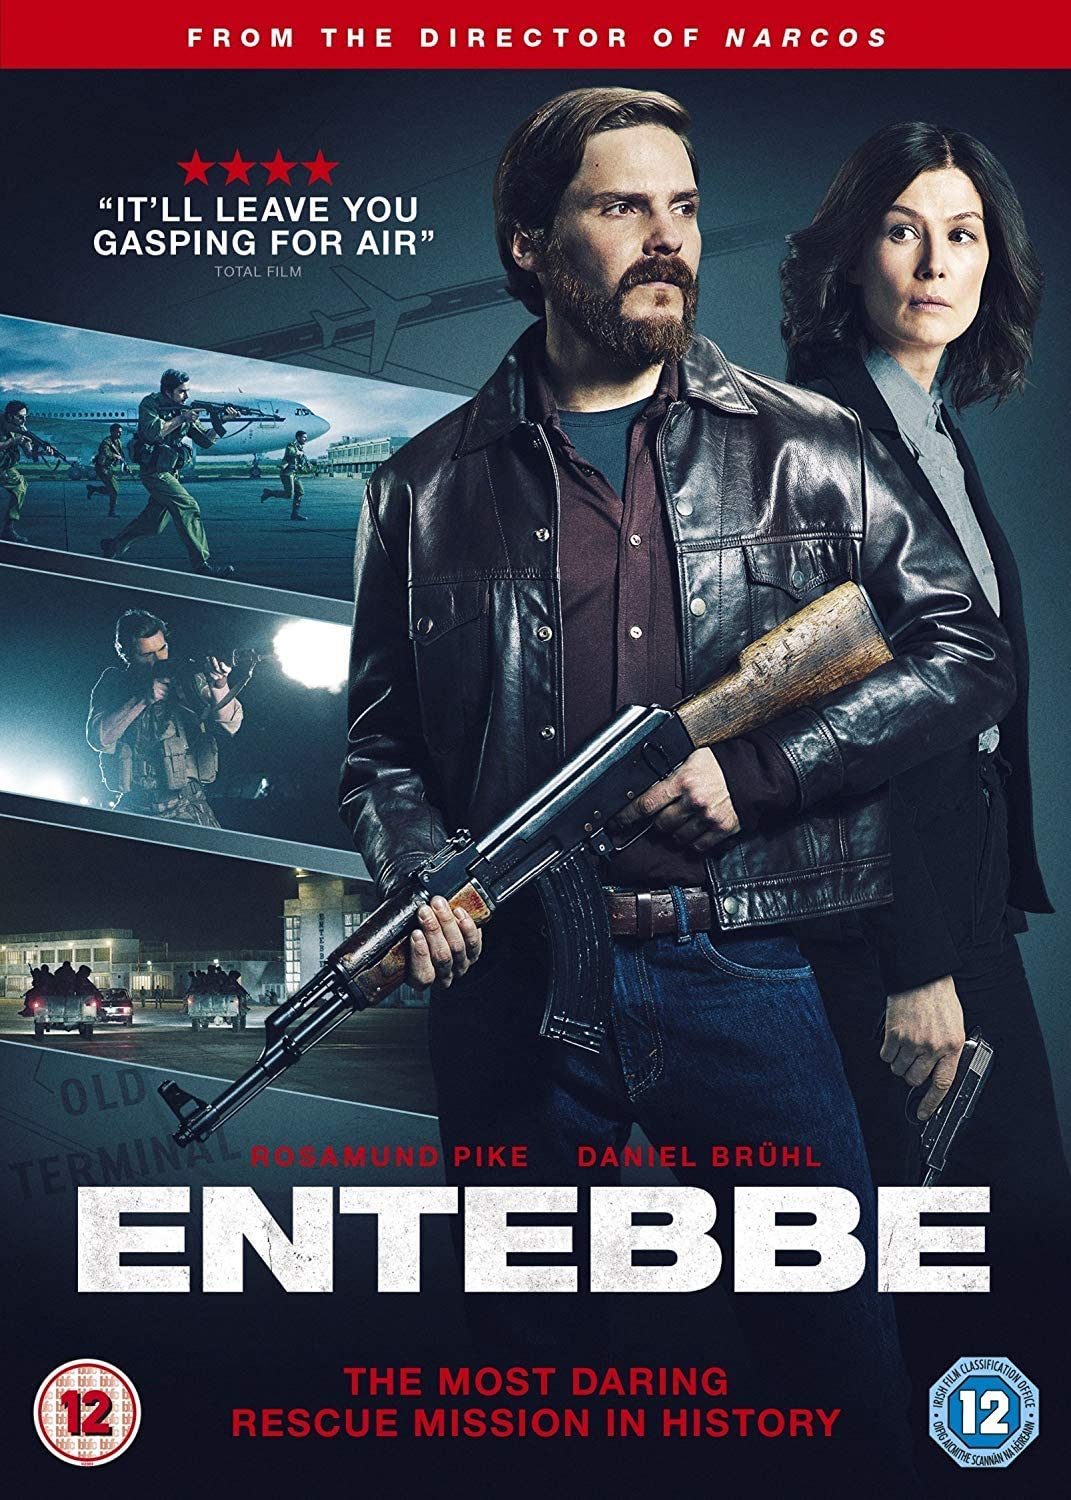 Entebbe [2018] - Thriller/Drama [DVD]